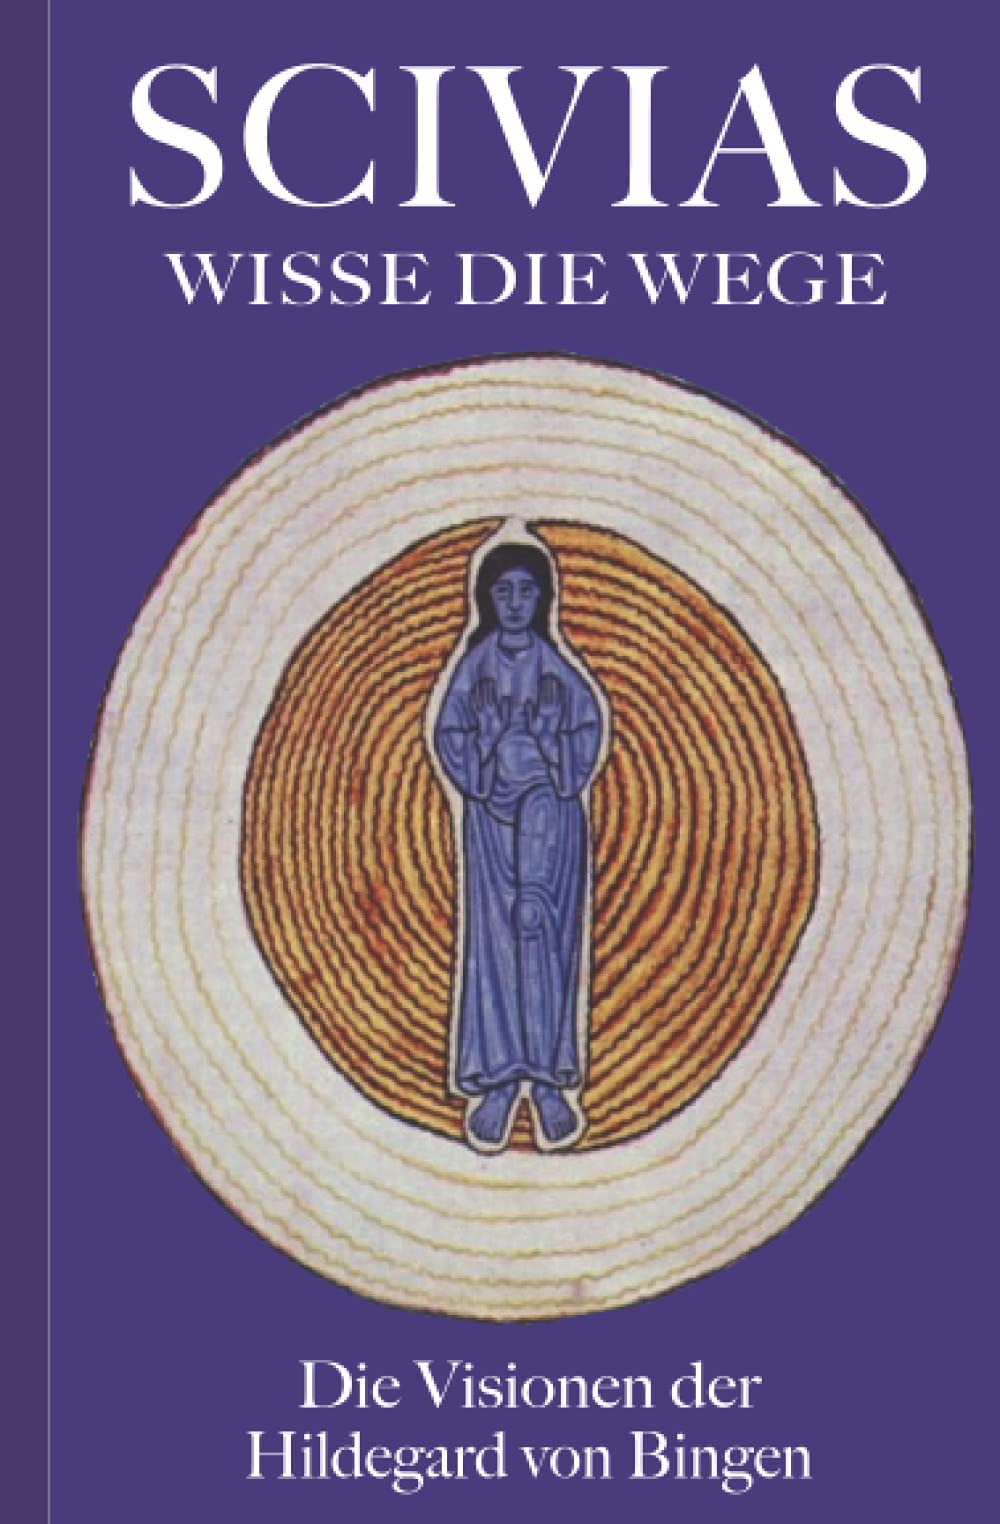 SCIVIAS – Wisse die Wege: Die Visionen der Hildegard von Bingen (German Edition)